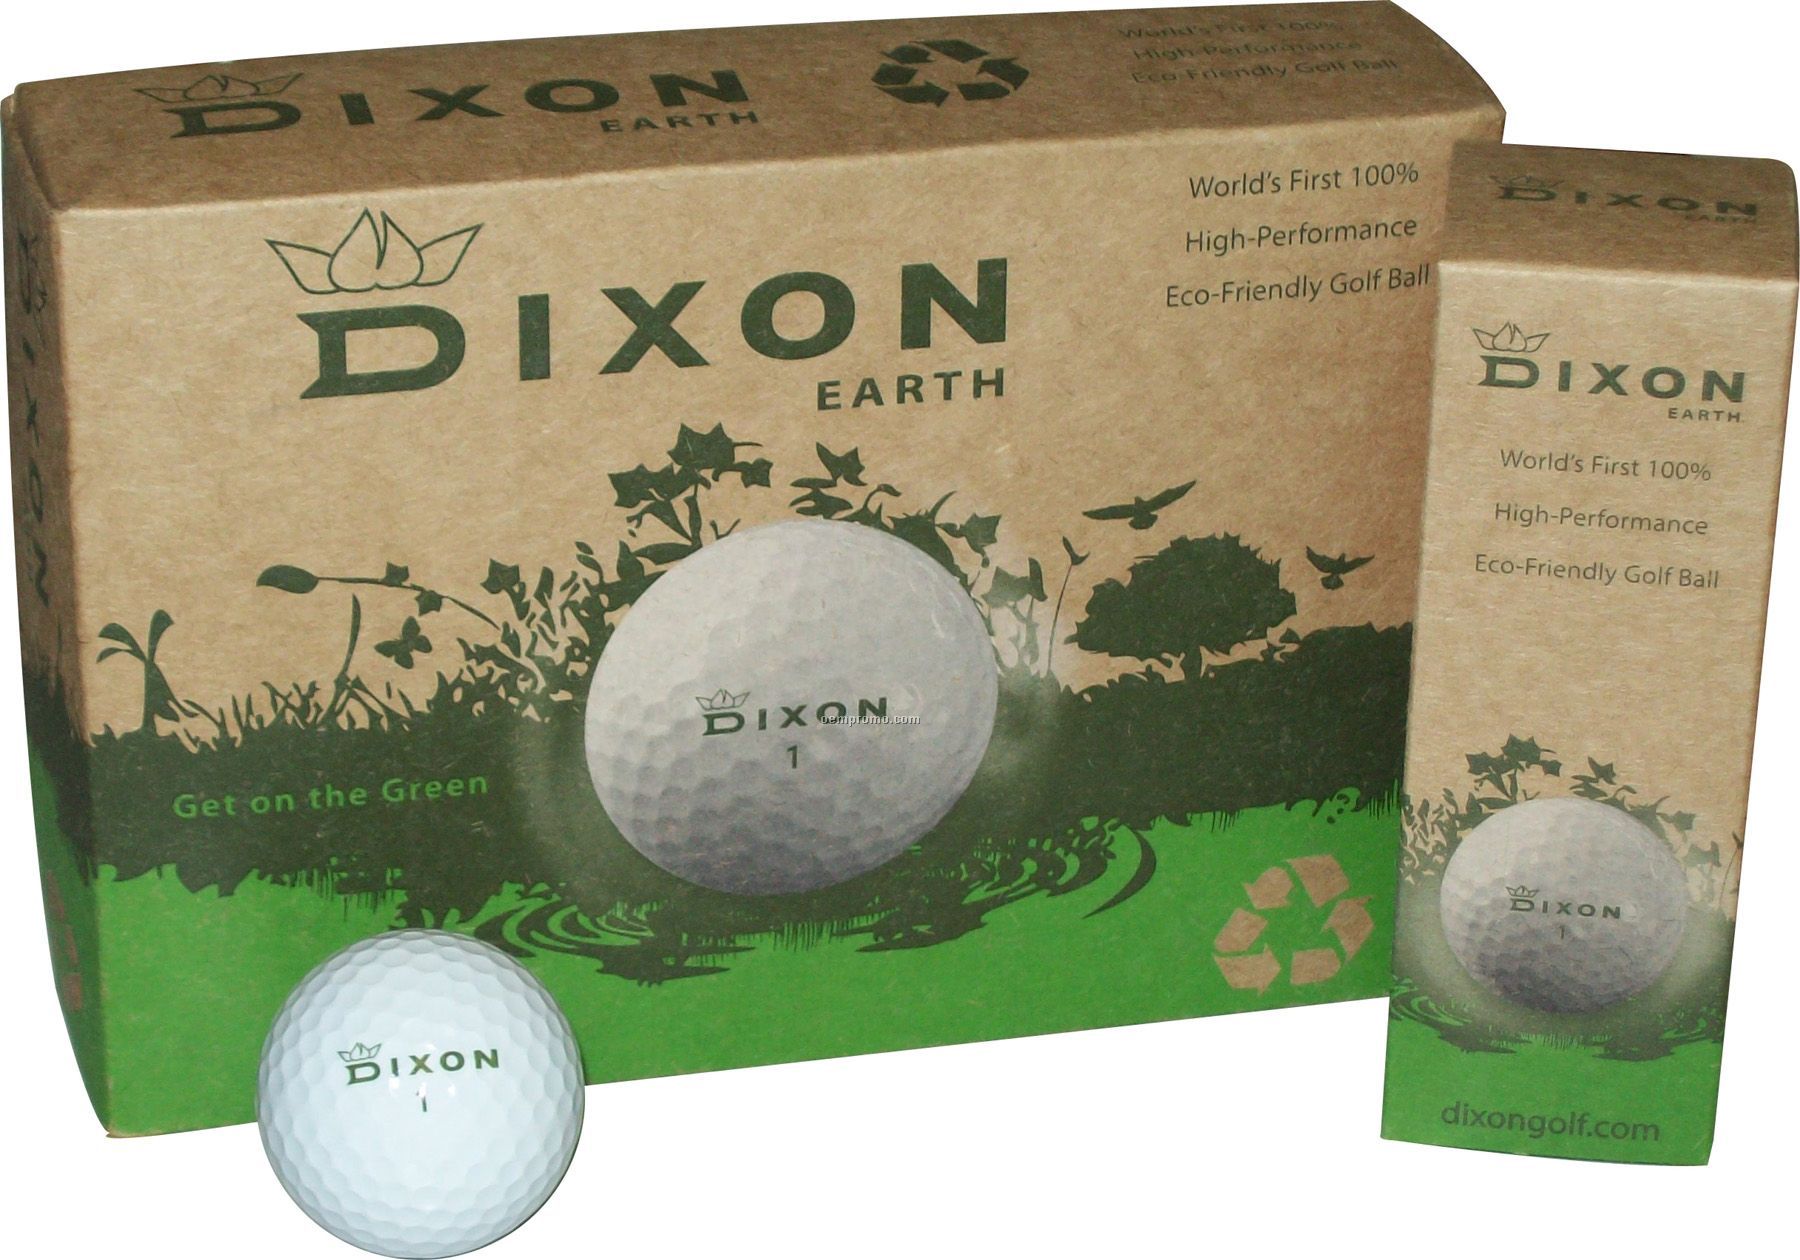 Dixon Earth Golf Balls